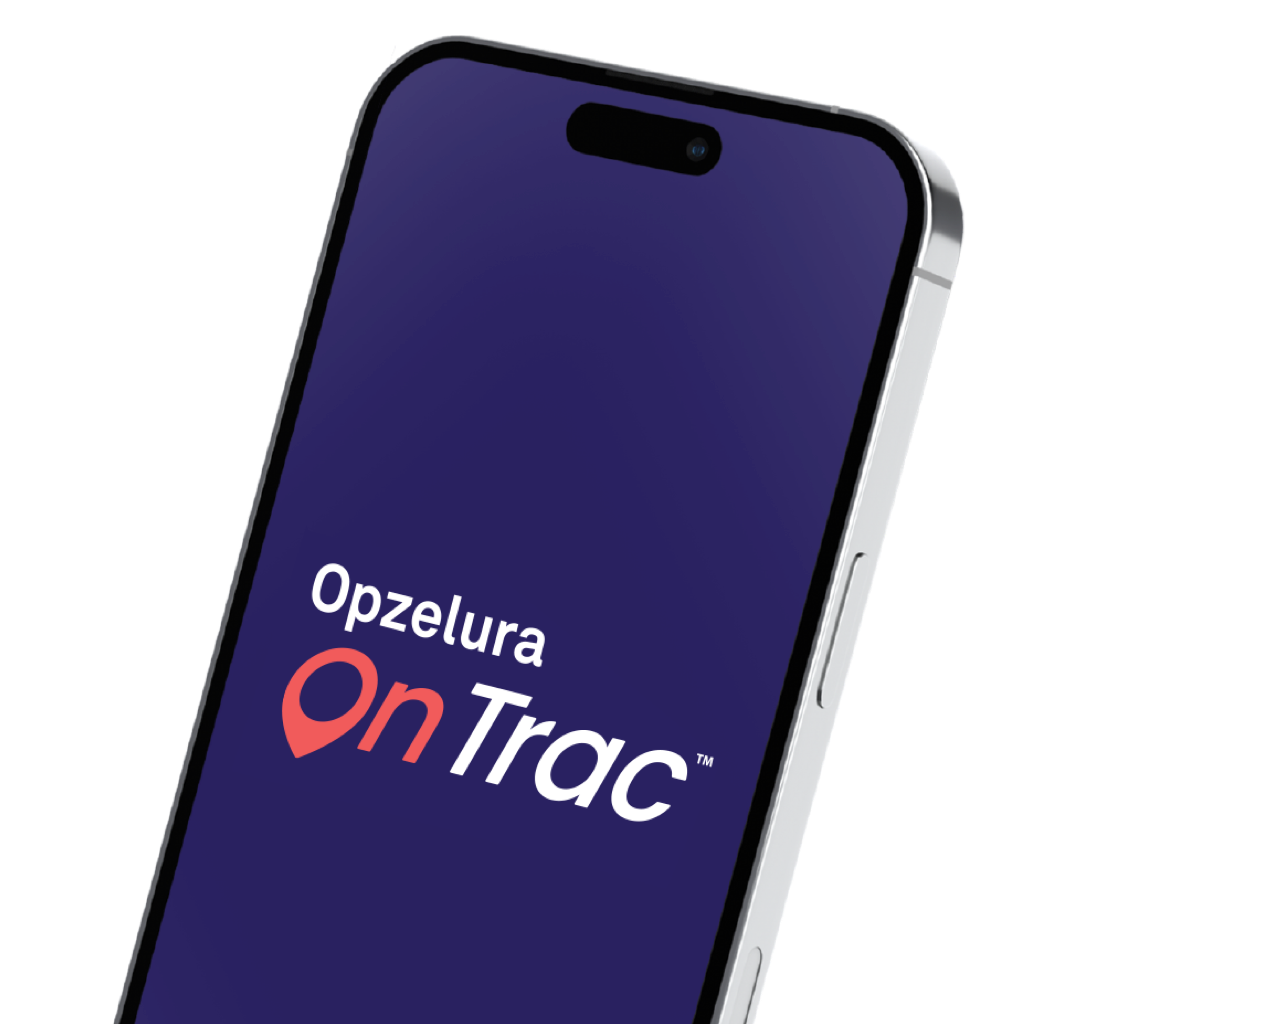 Opzelura On Trac™ app to track your progress with OPZELURA